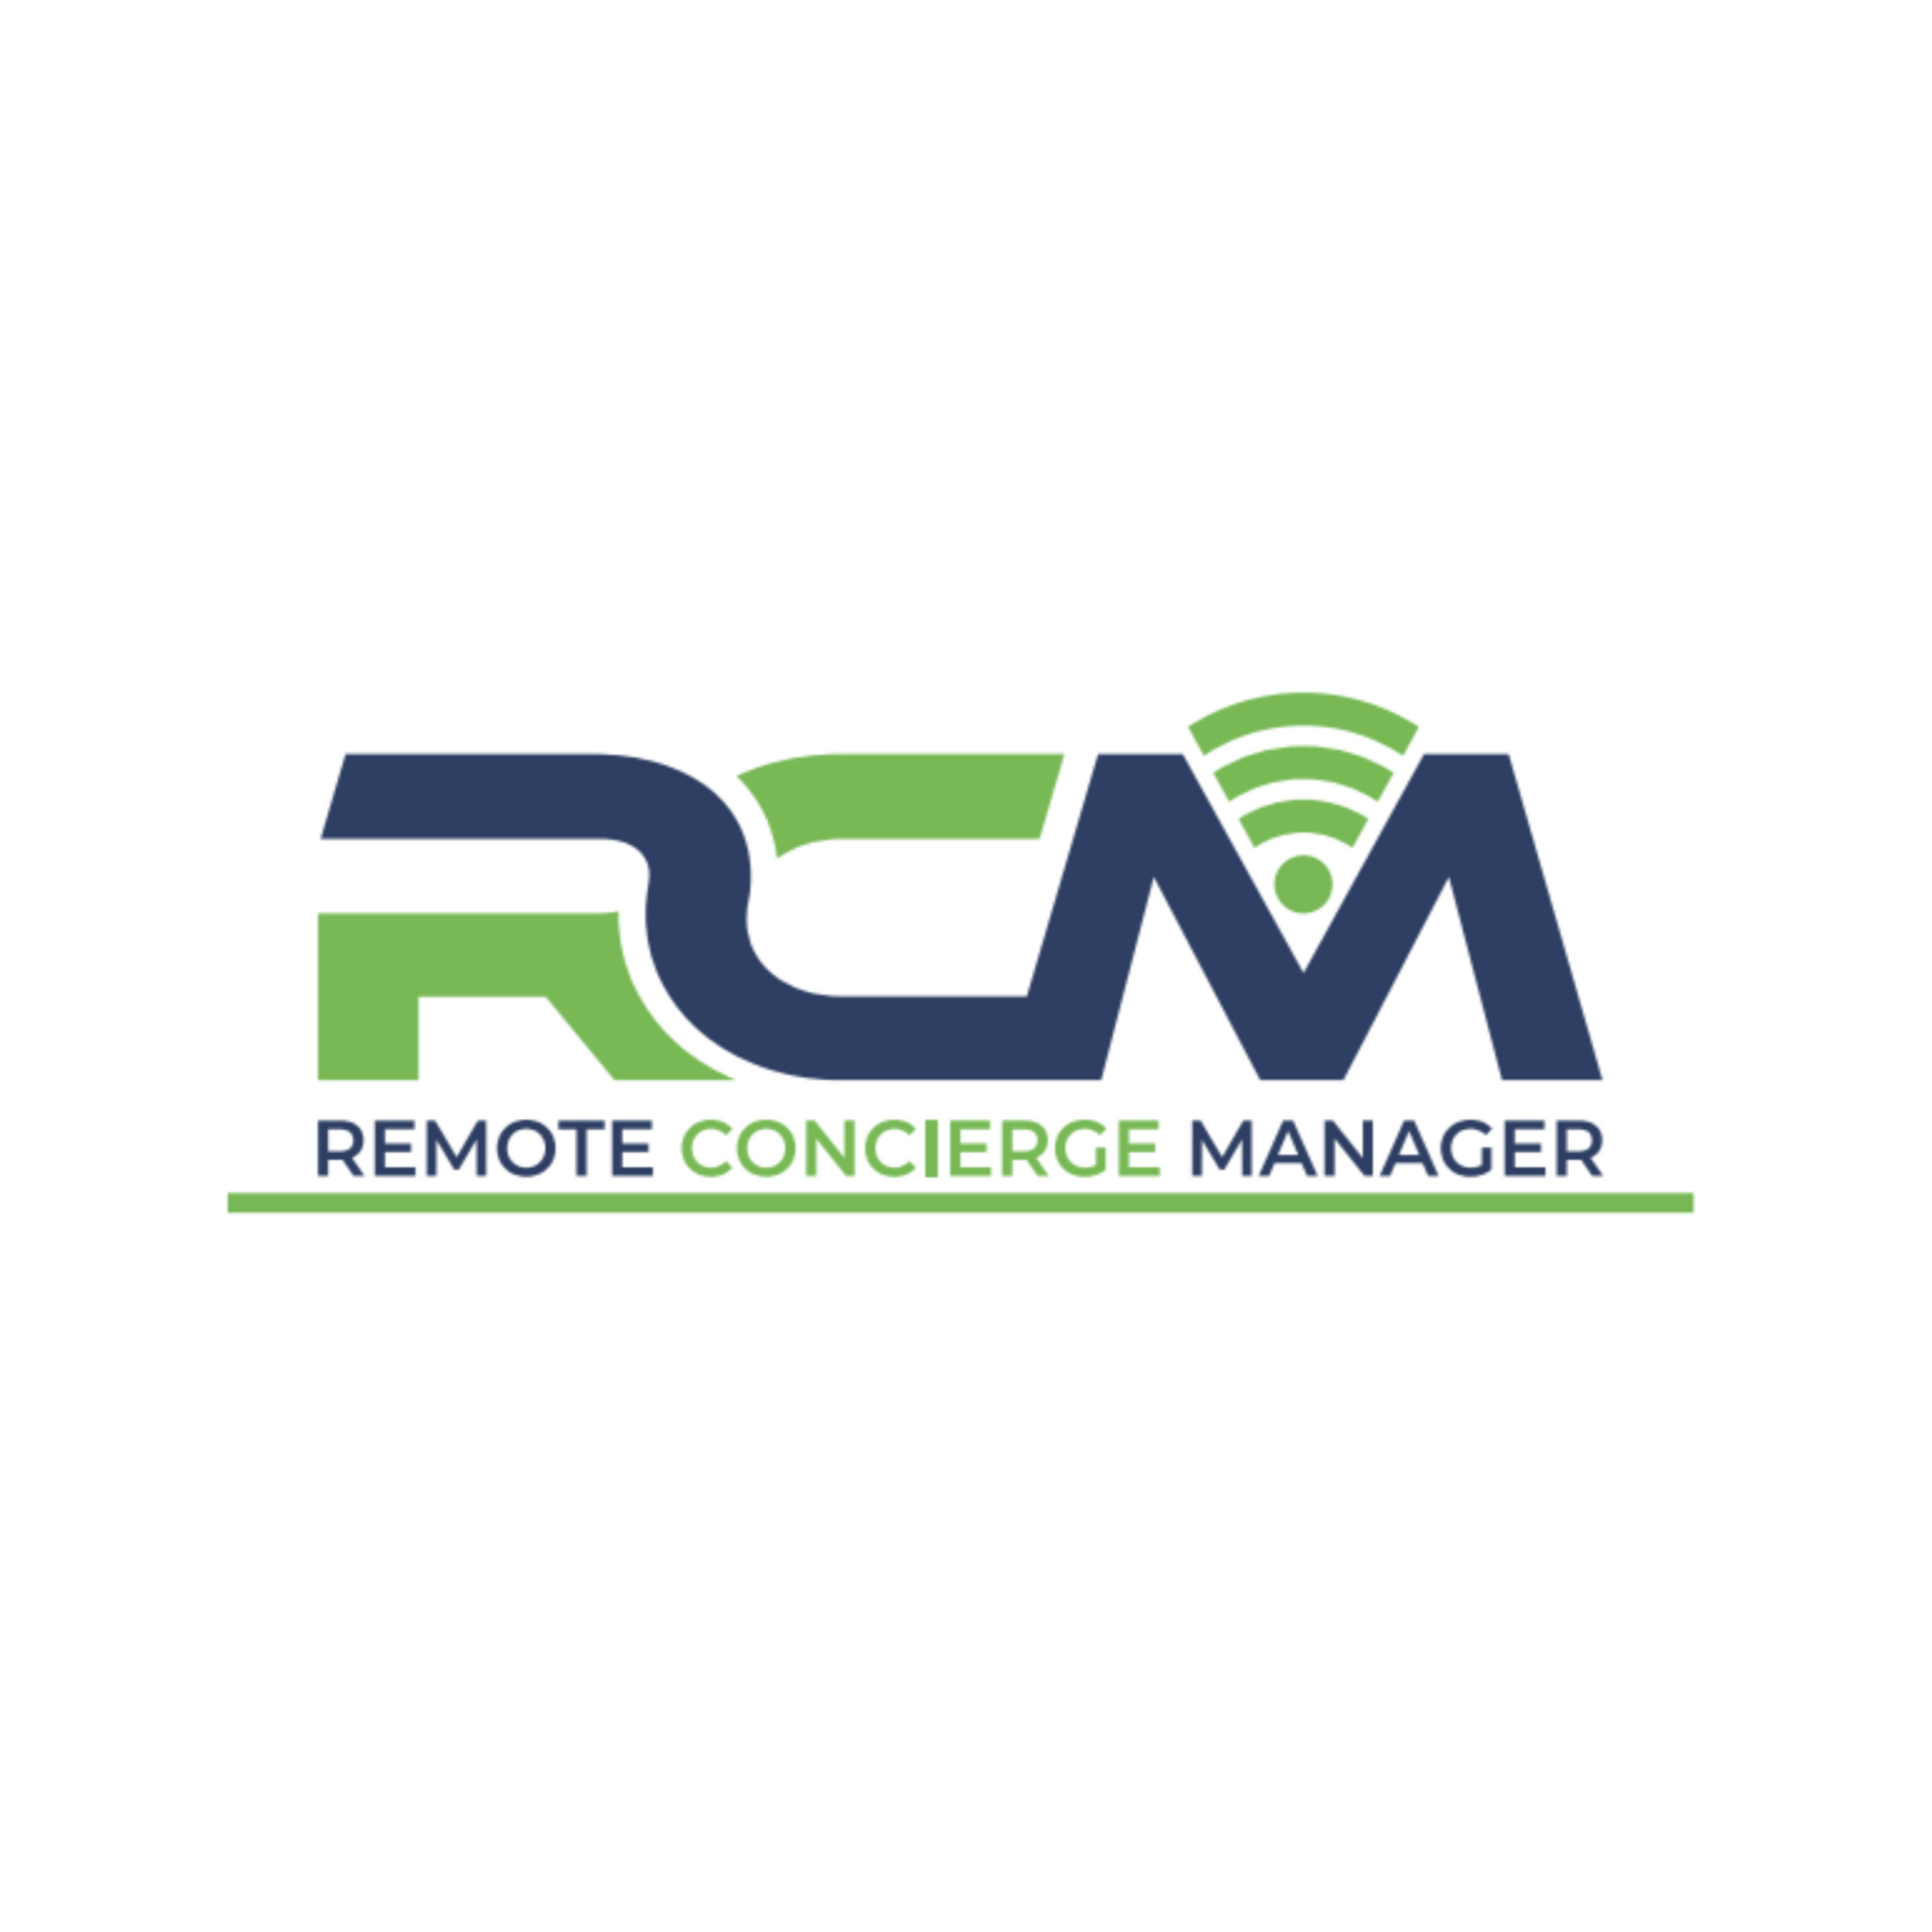 RCM - Remote Concierge Manager